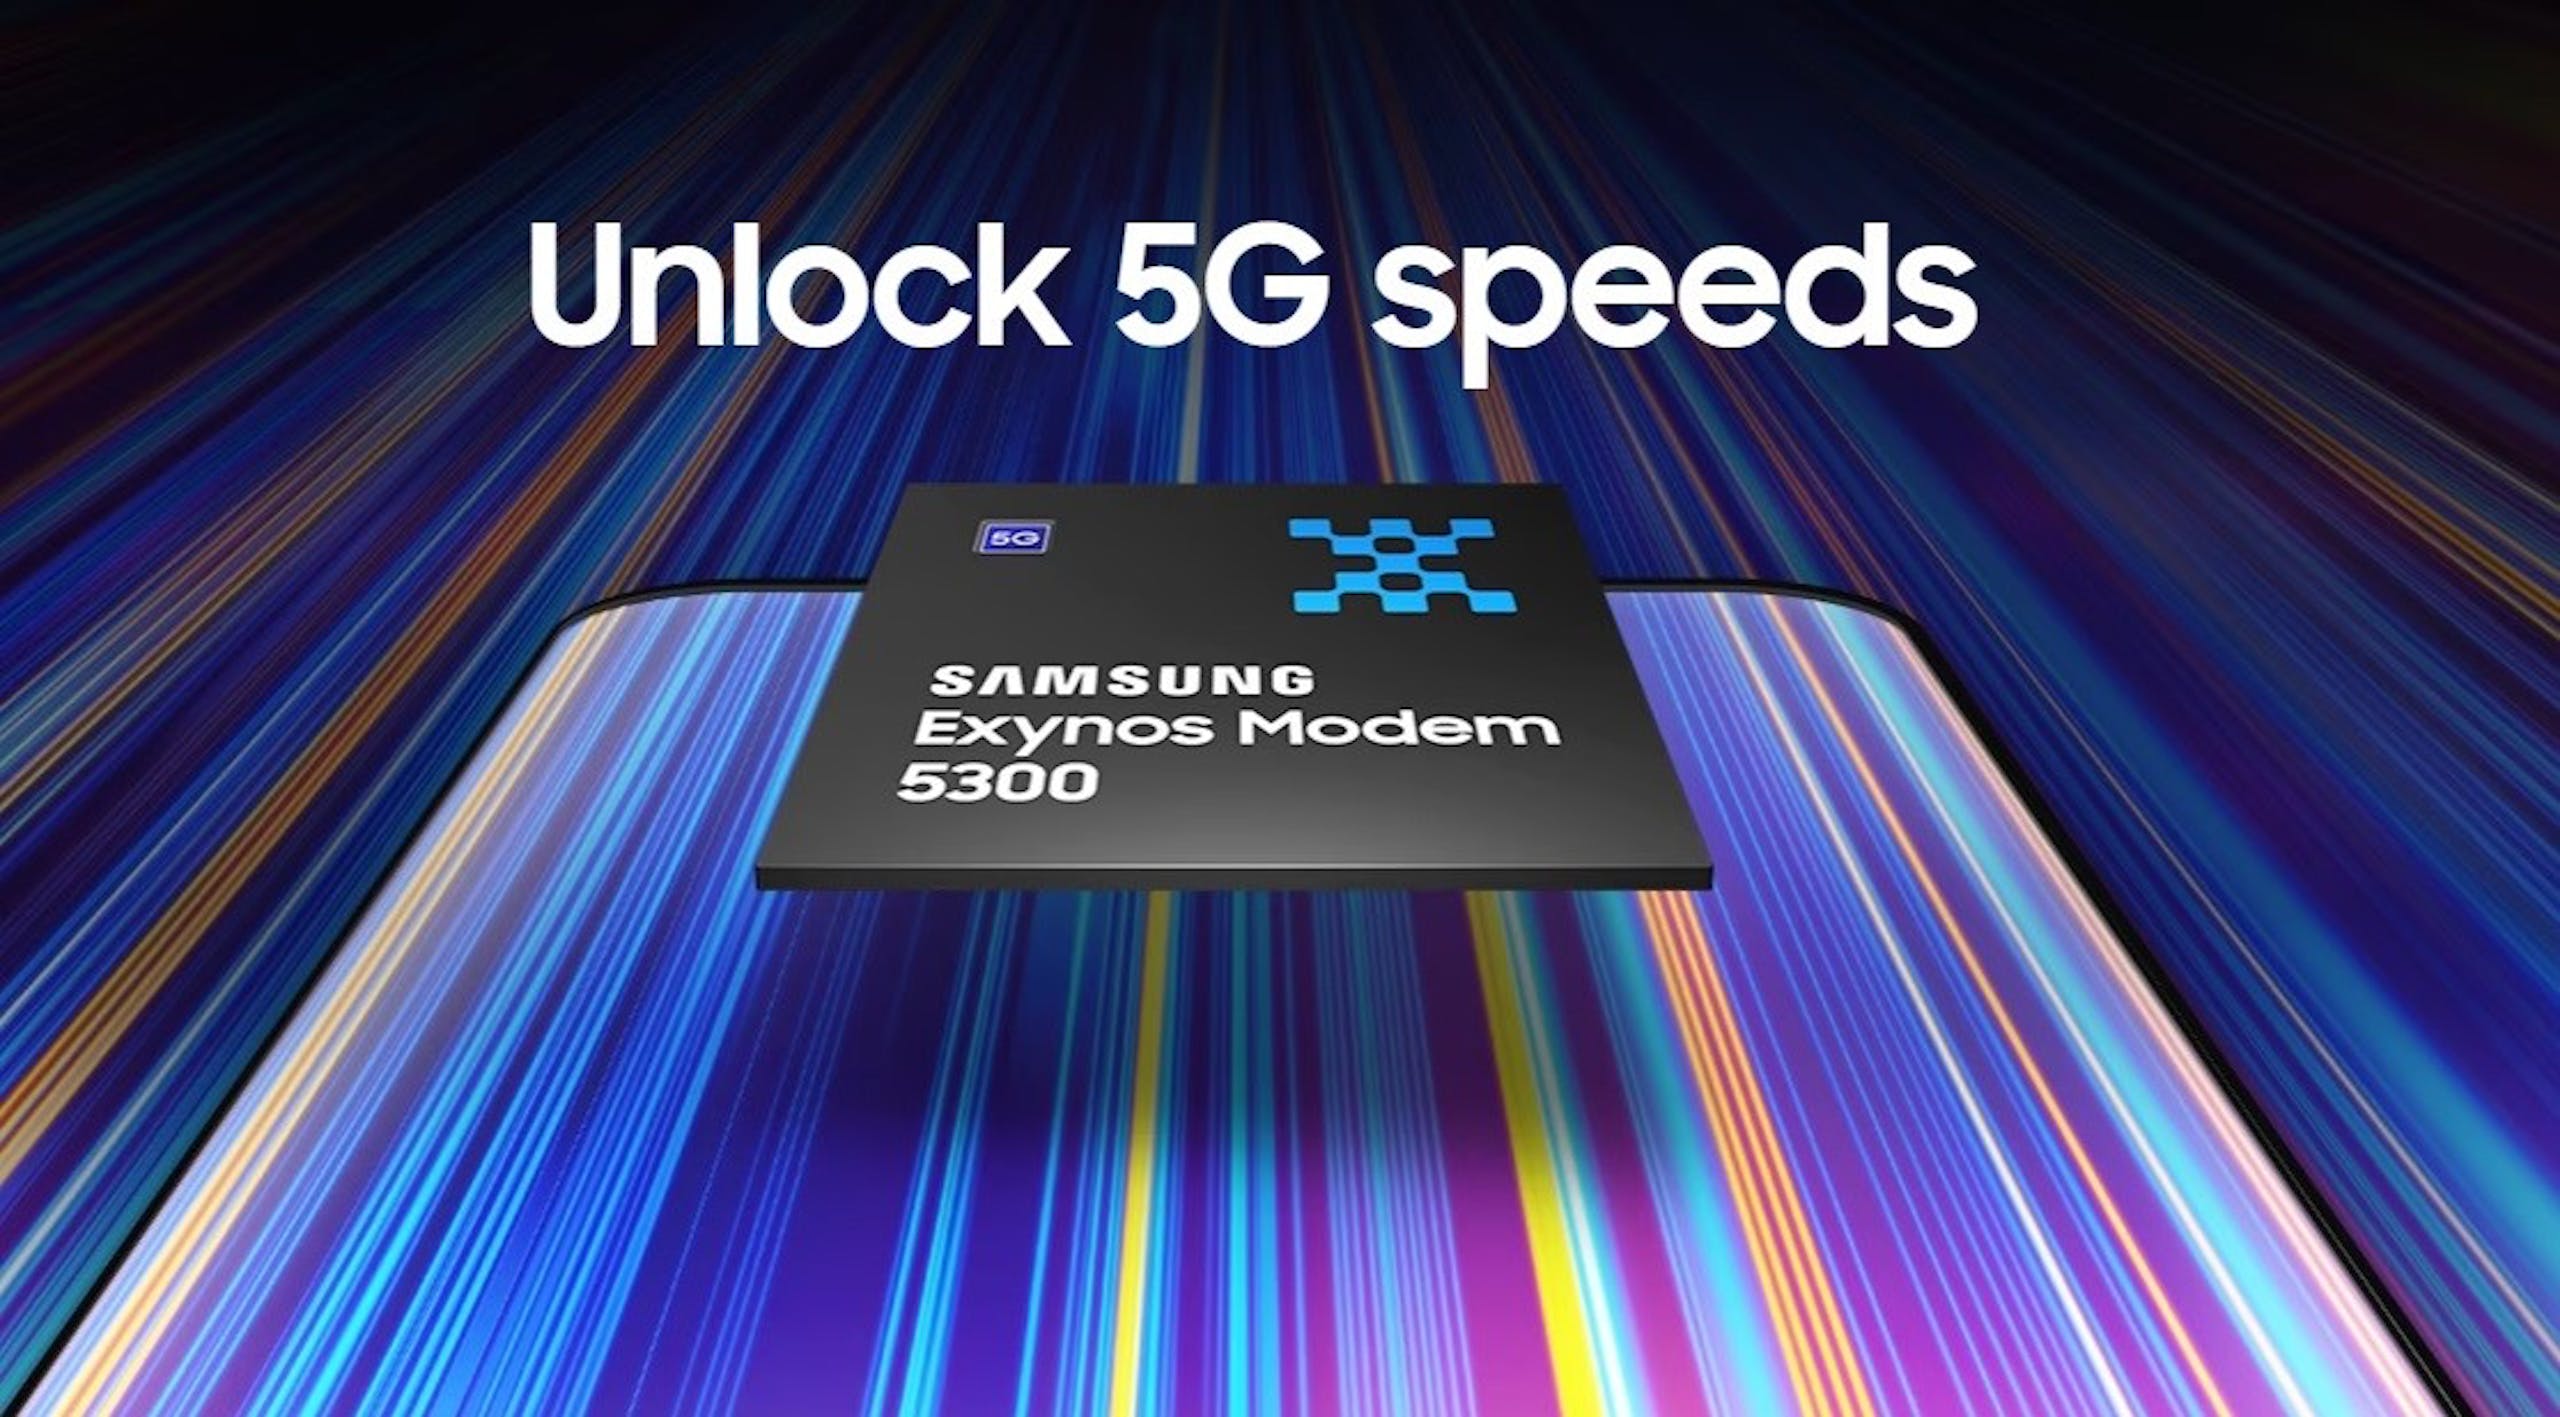 照片中提到了Unlock 5G speeds、टू、SAMSUNG，包含了Exynos、Exynos、調製解調器、三星、三星Galaxy S系列